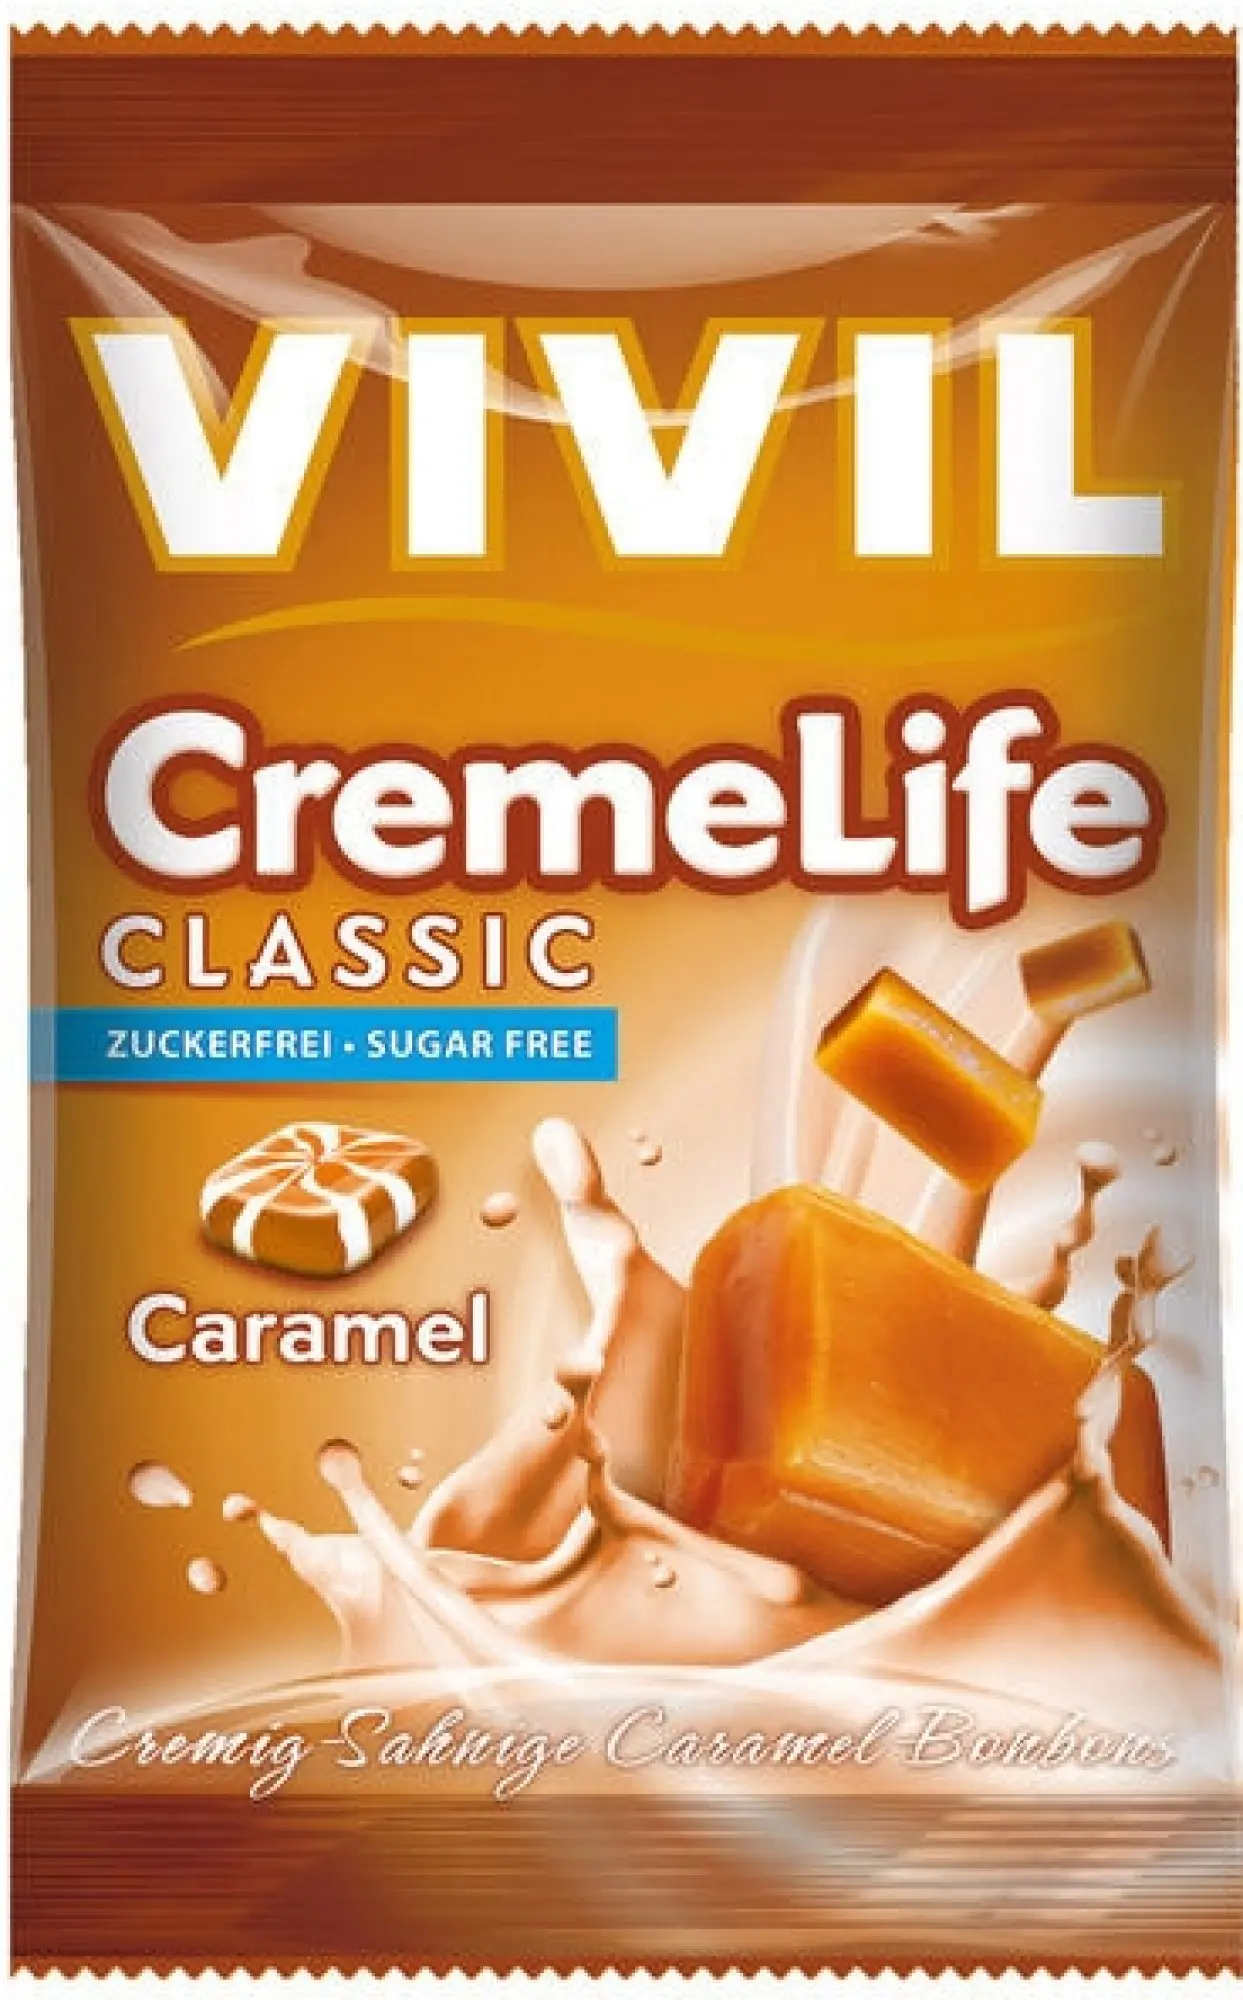 Vivil Creme life karamel 110 g